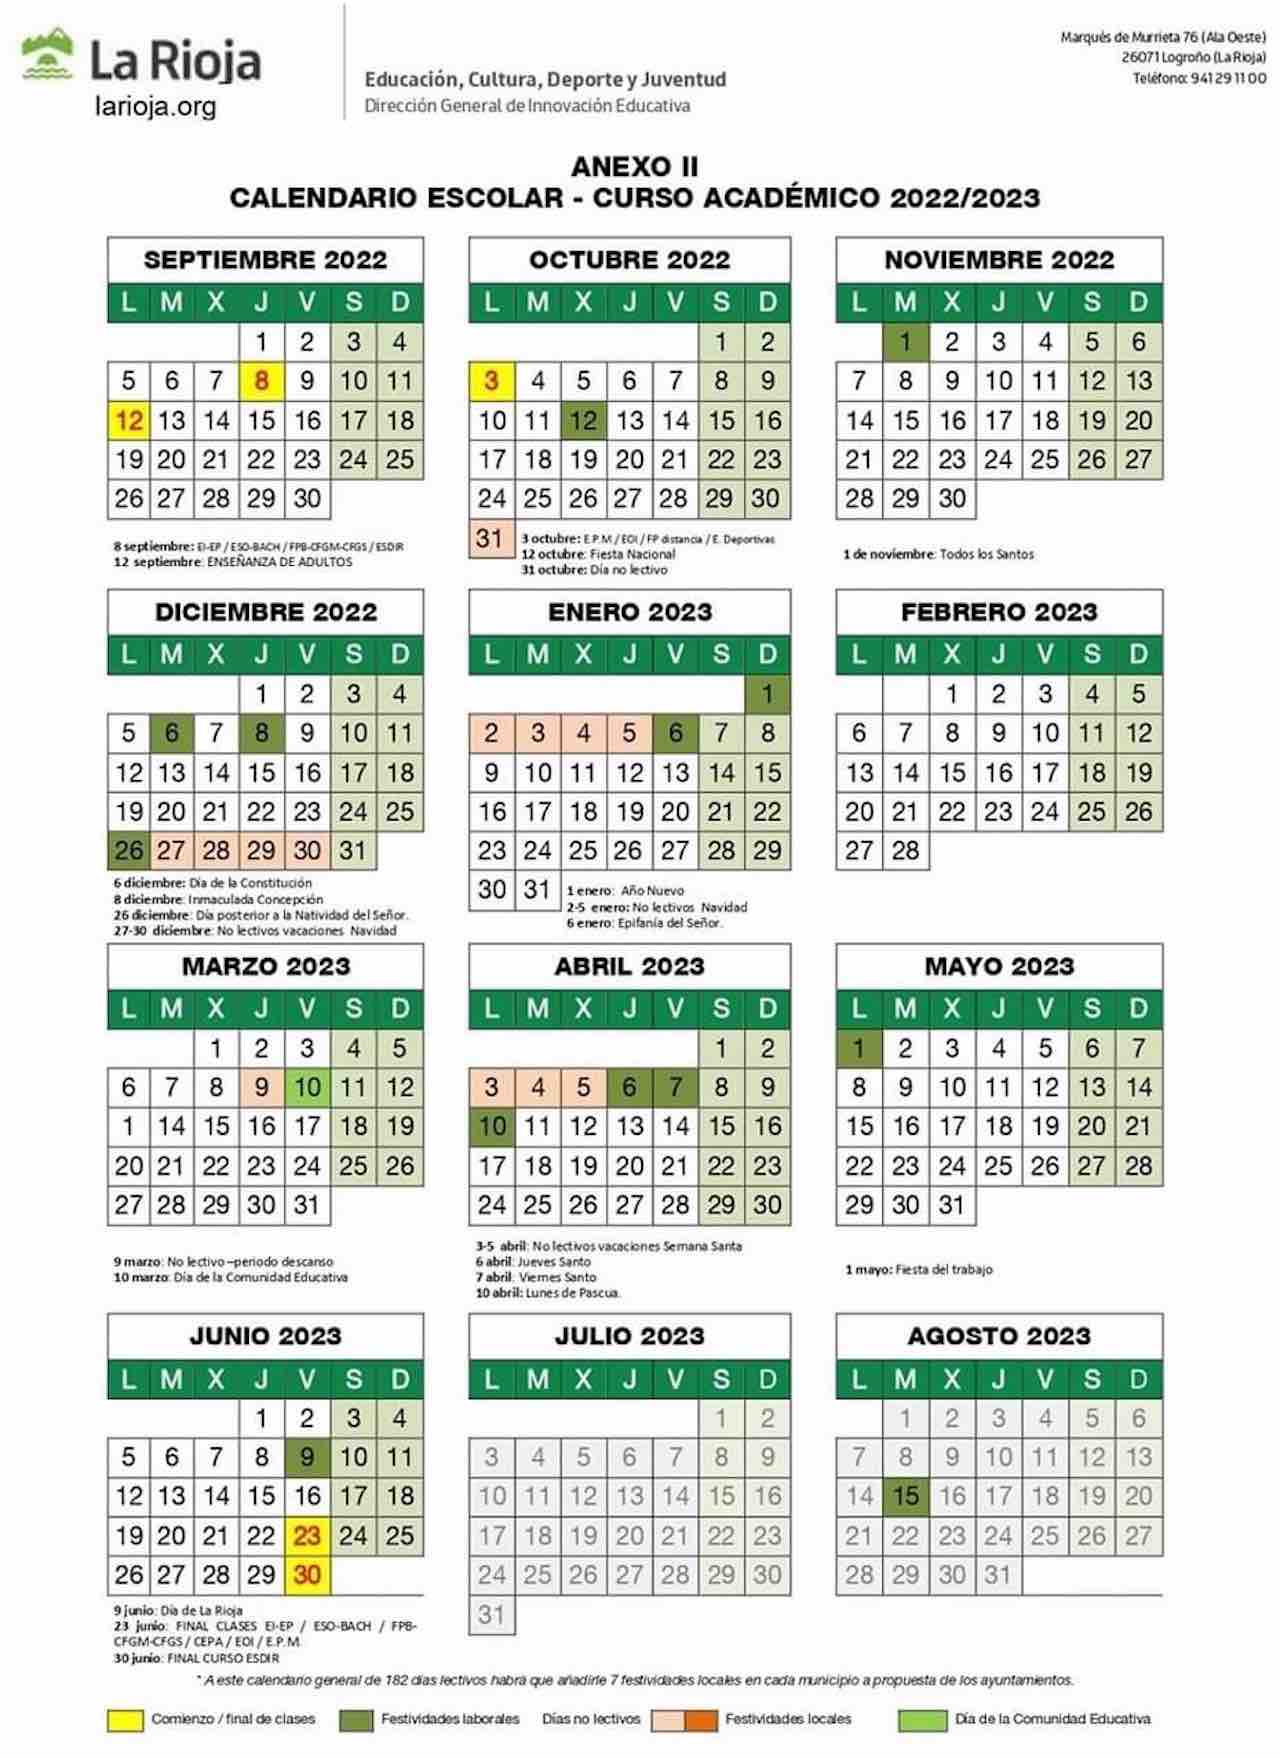 Calendario escolar LA RIOJA para el curso 2022-2023